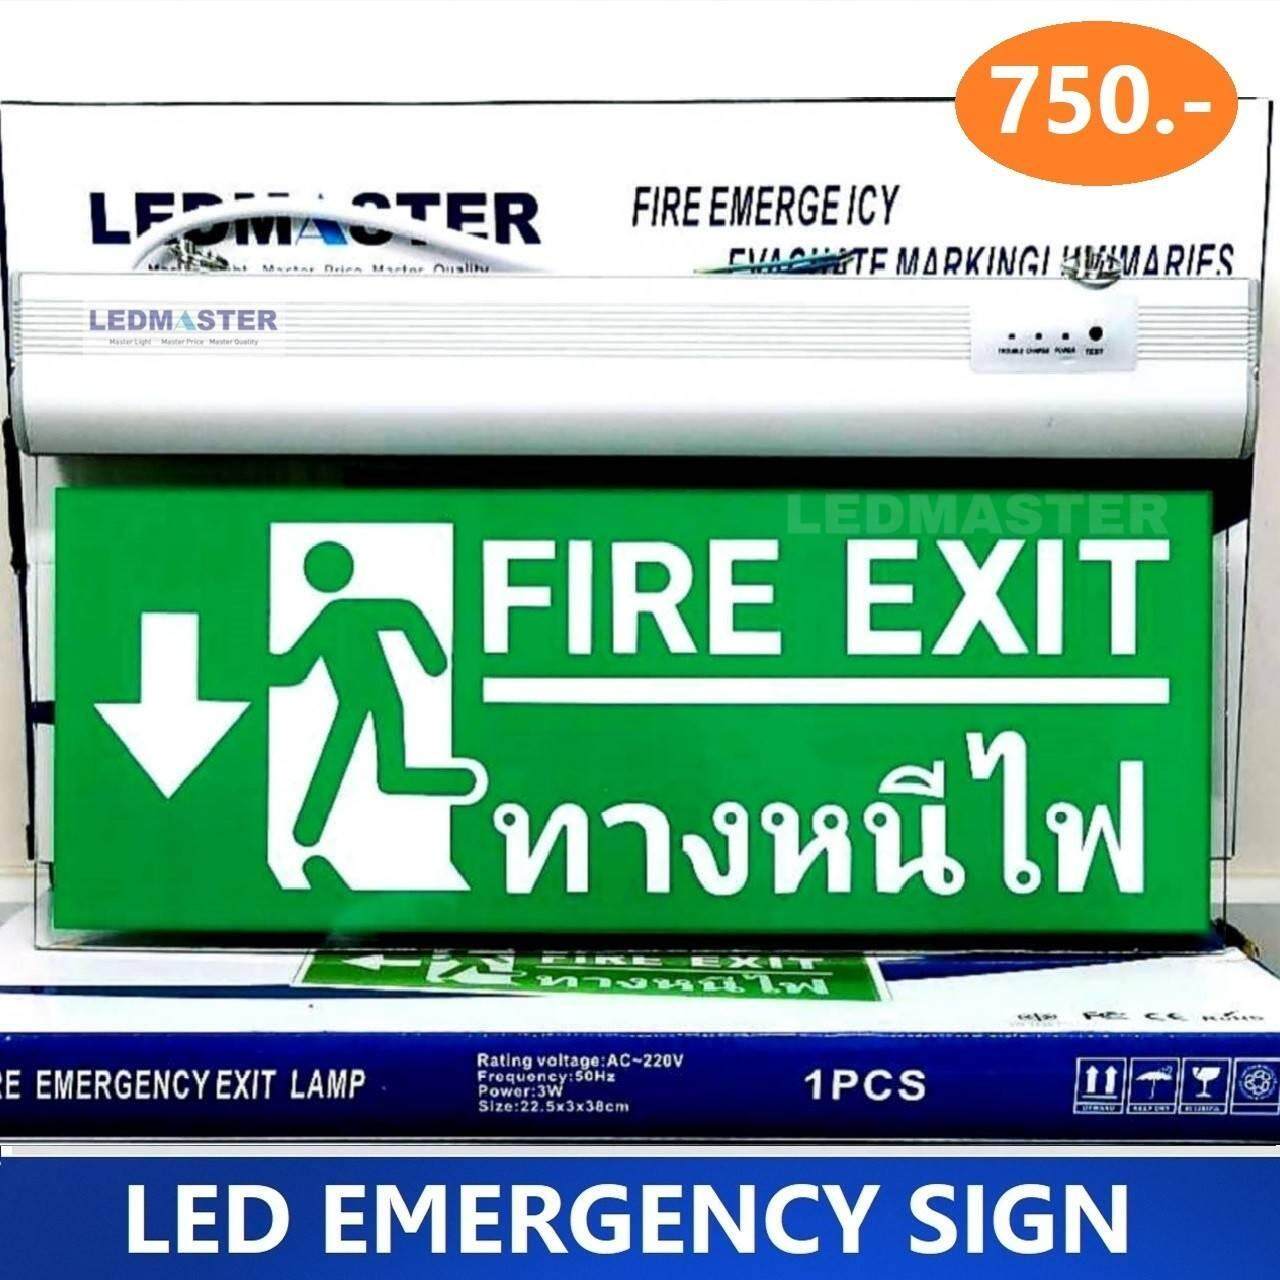 ป้ายทางออกฉุกเฉิน Emergency Exit Sign ป้ายสัญลักษณ์ทางออก ทางหนีไฟ (Fire Exit) ไฟฉุกเฉิน เมื่อเหตุการณ์ฉุกเฉิน ไฟดับ ไฟตก สามารถสำรองไฟได้ 3-5 ชั่วโมง แบบสองหน้า ชนิดแขวน รุ่น ข้อความ FIRE EXIT ทางหนีไฟ ลูกศรชี้ลง MT02  จำนวน 1 ป้าย